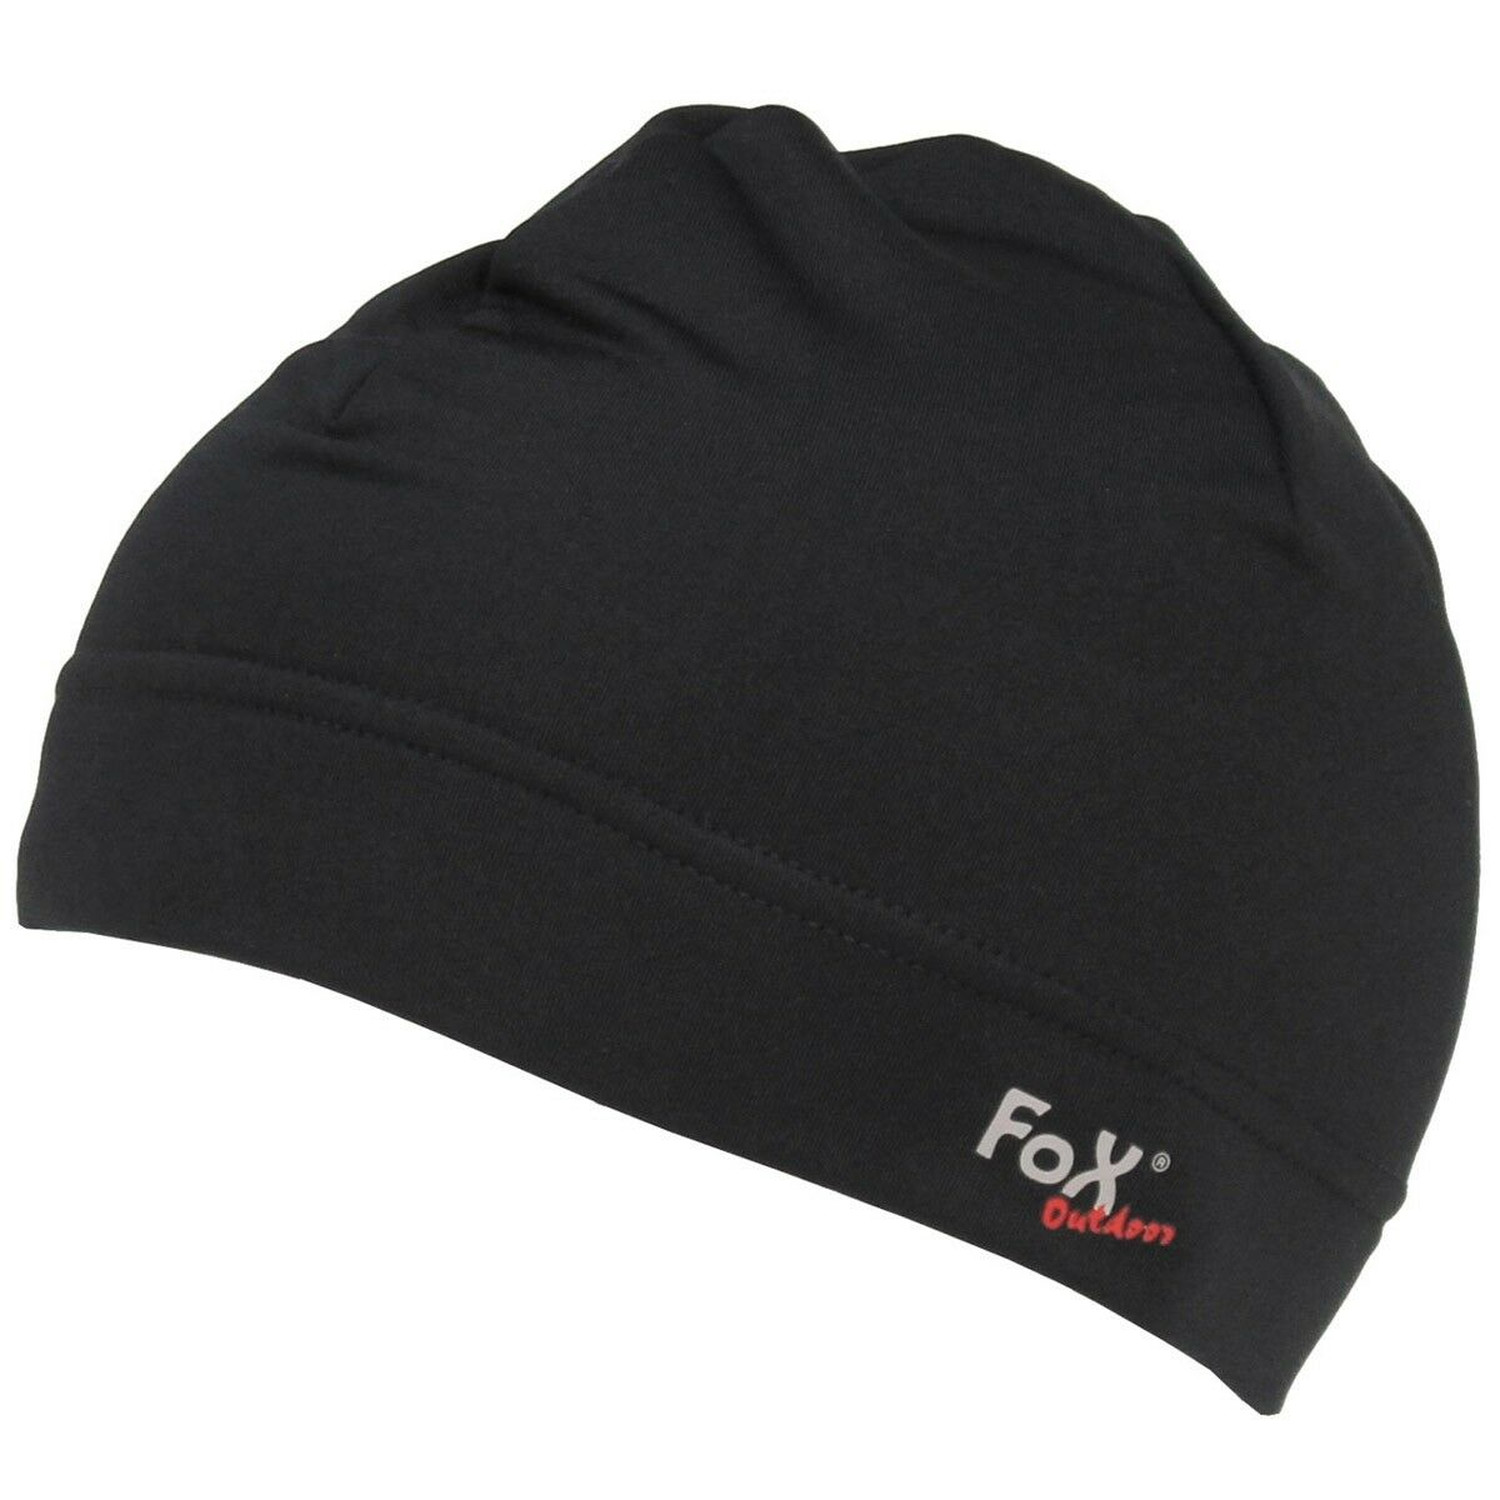 Mütze Run von FoX Outdoor in Schwarz, Größe S / M